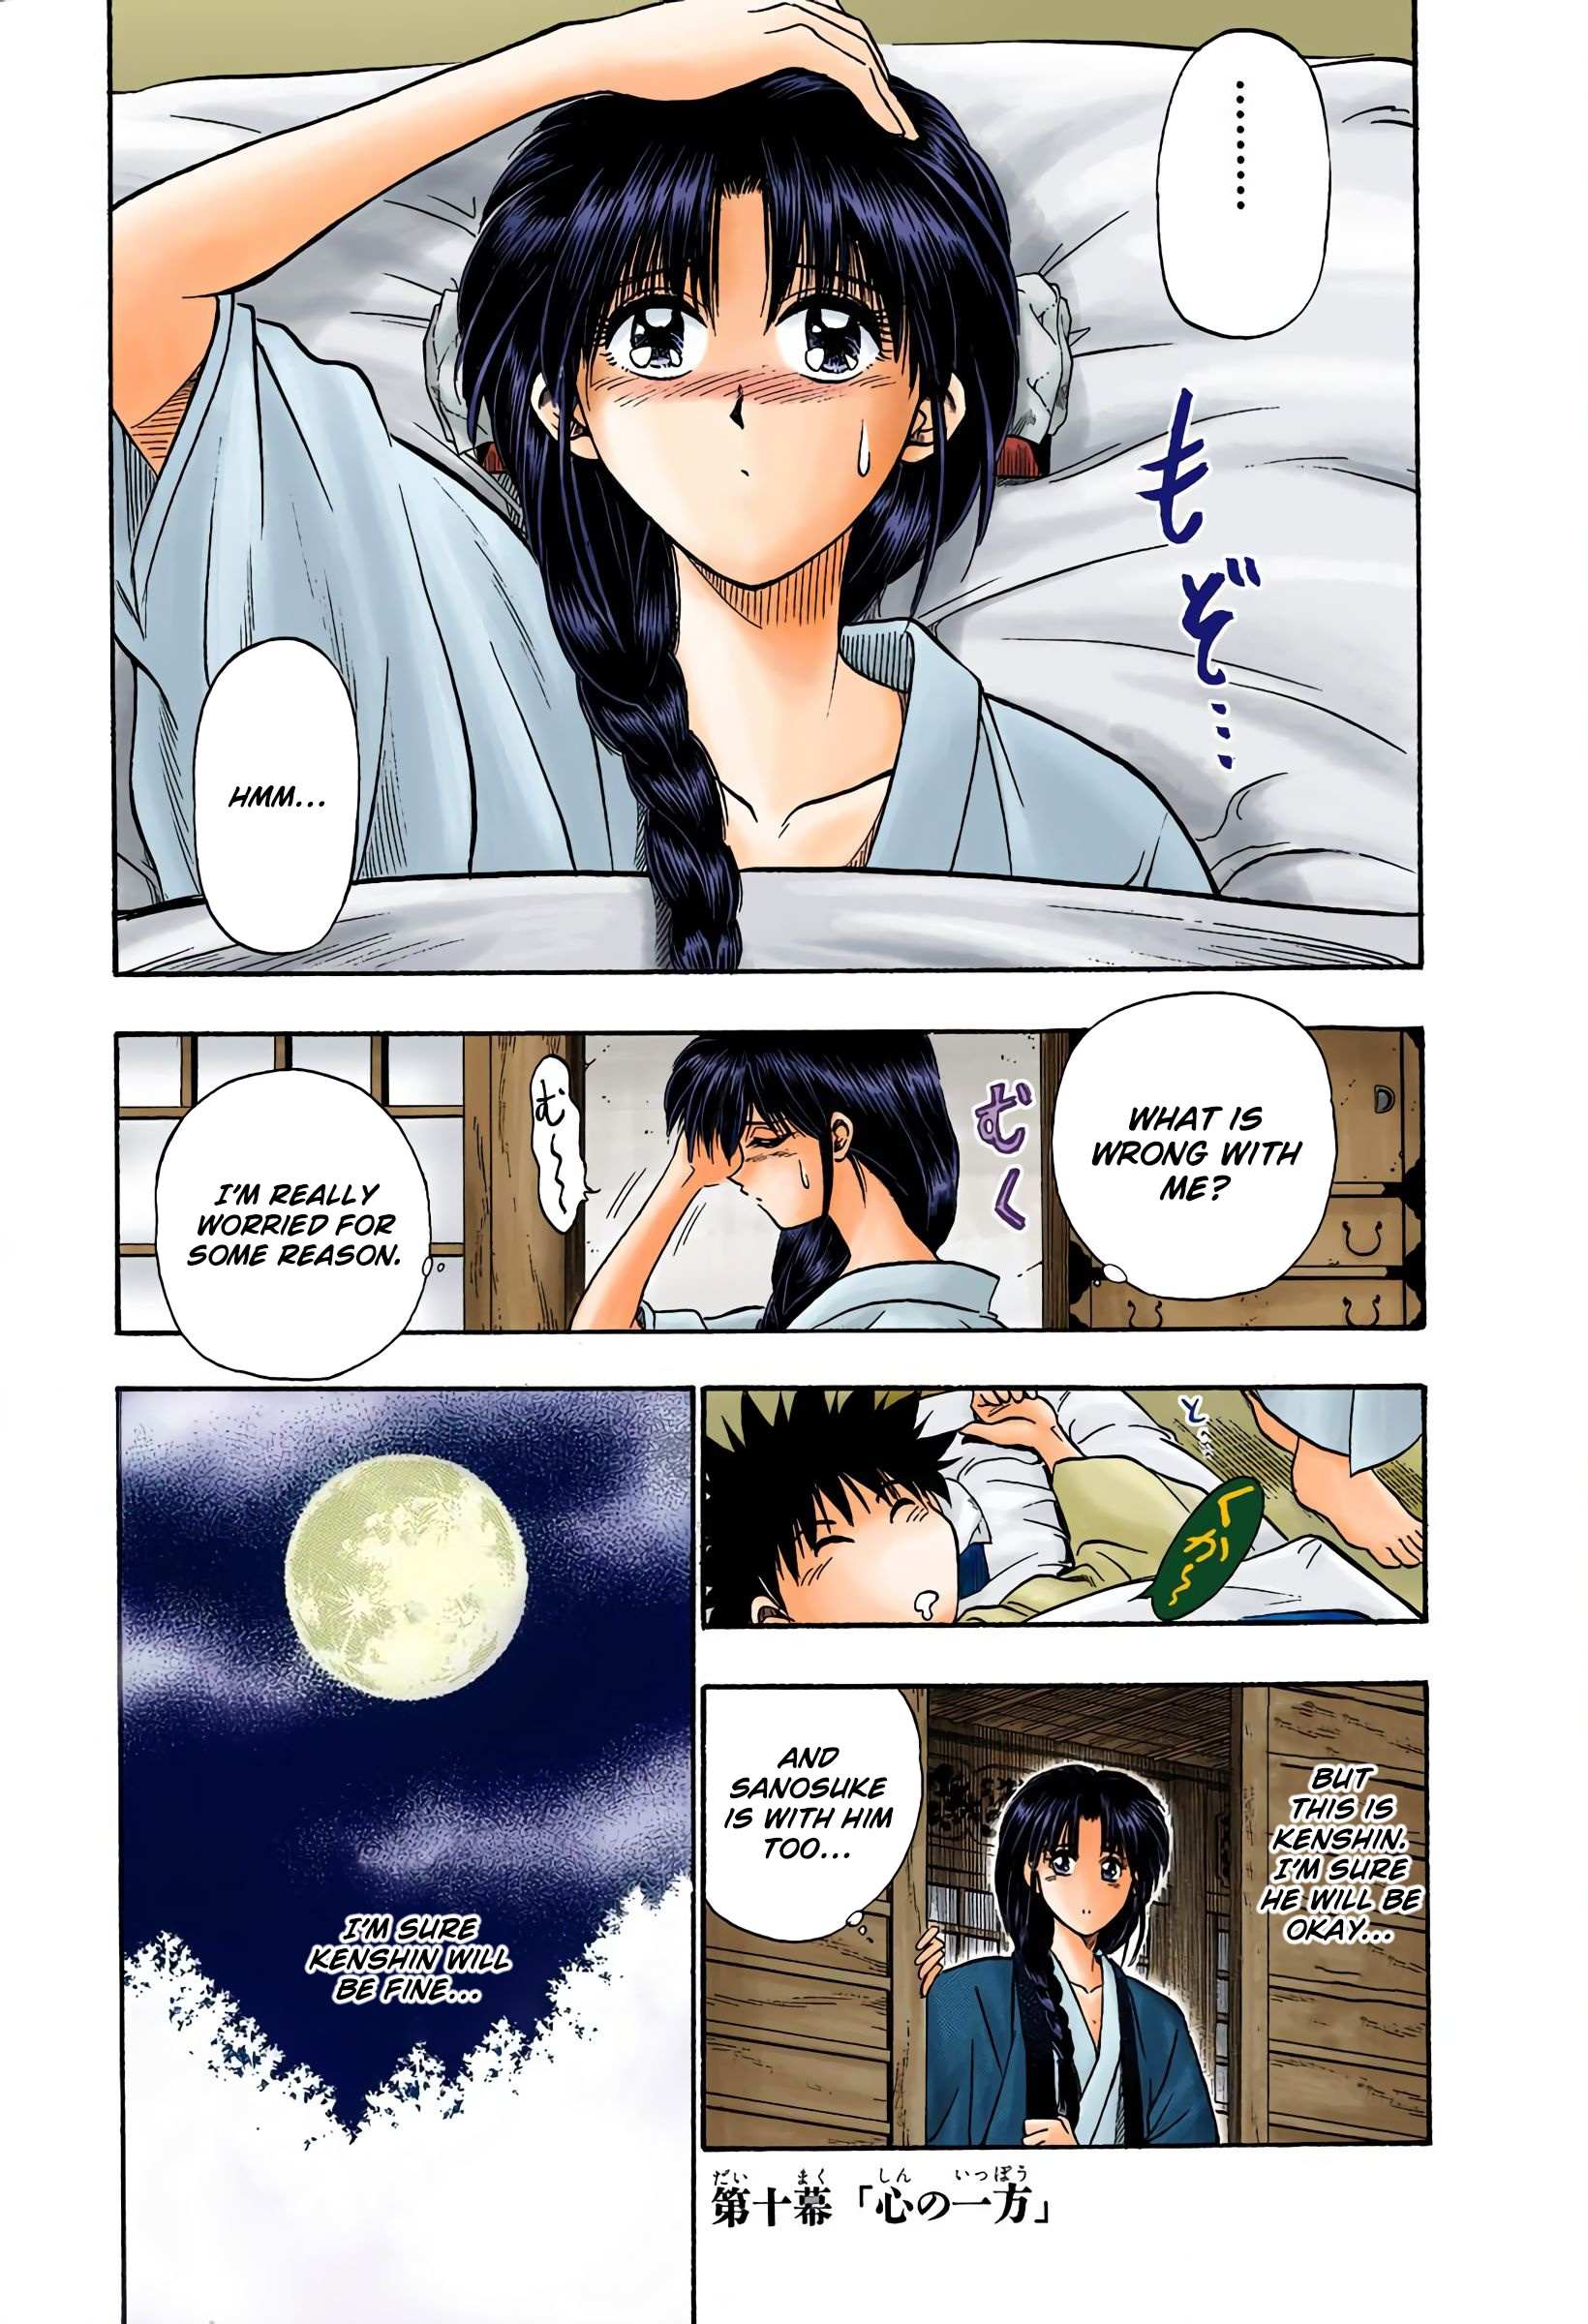 Rurouni Kenshin: Meiji Kenkaku Romantan - Digital Colored - chapter 10 - #1